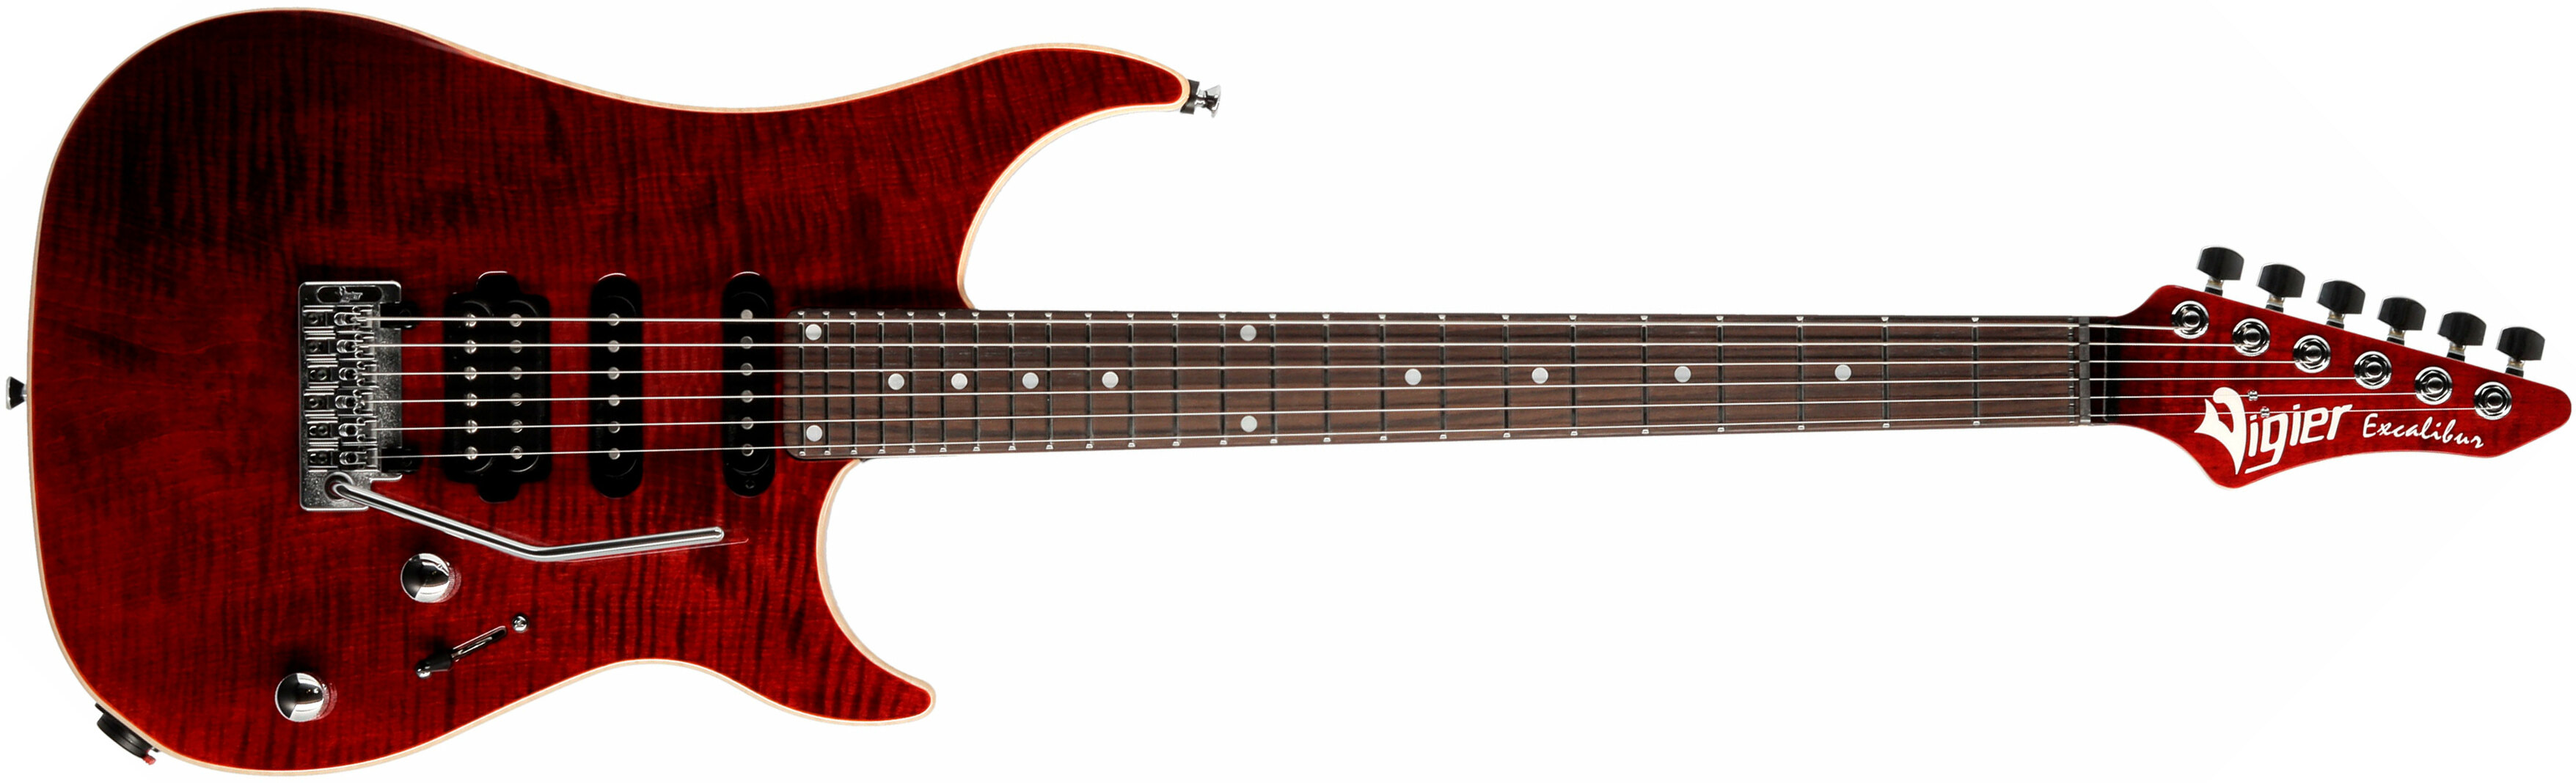 Vigier Excalibur Ultra Blues Hss Trem Rw - Ruby - Str shape electric guitar - Main picture